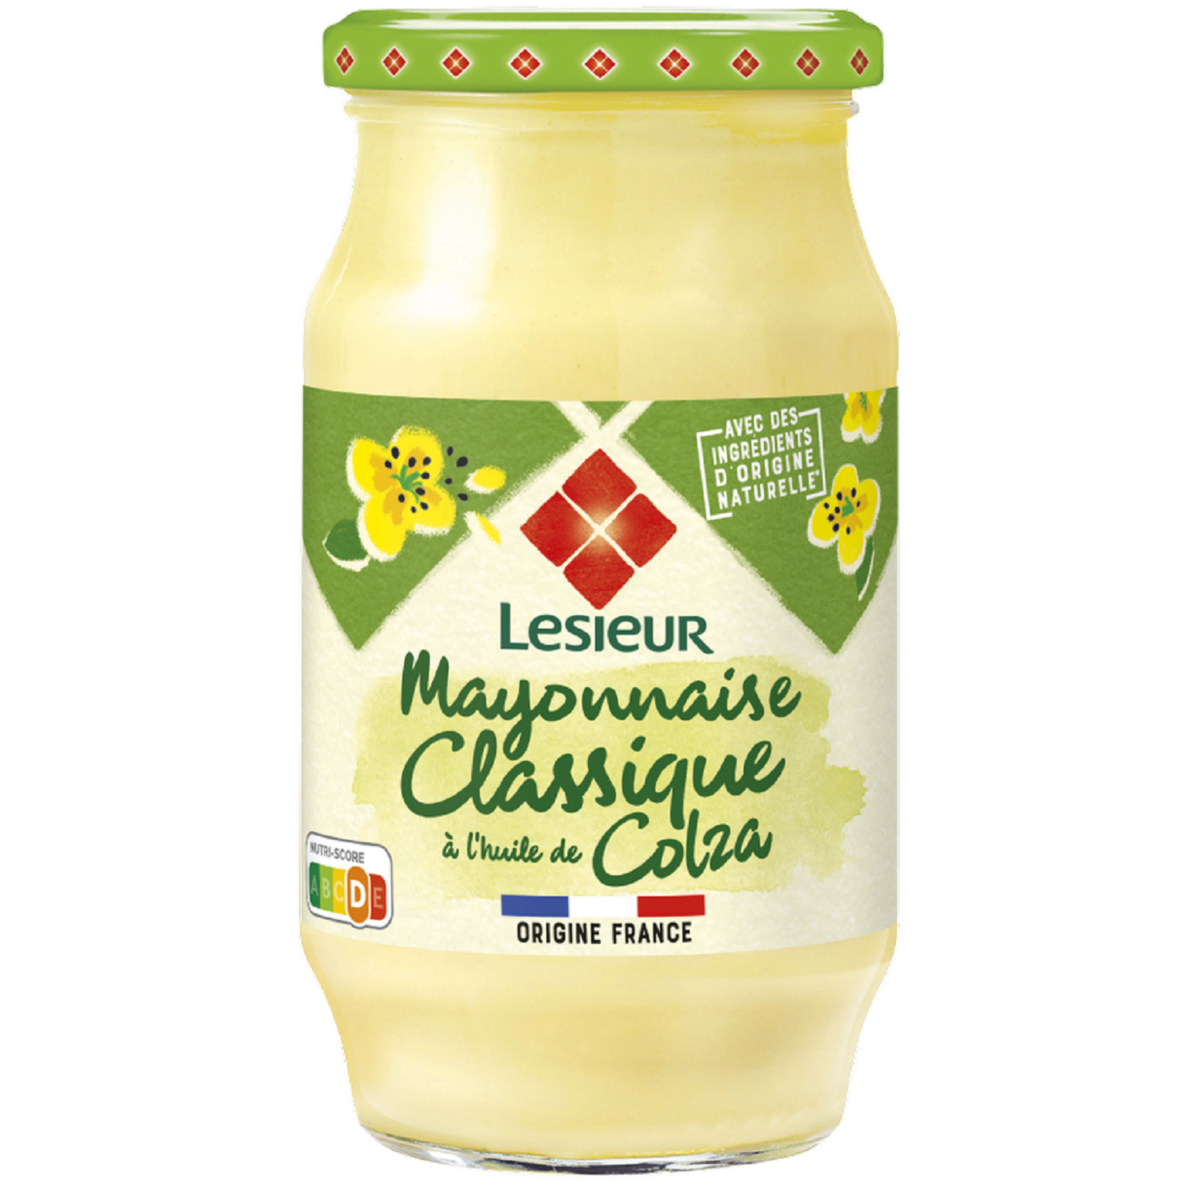 LESIEUR Mayonnaise pointe de moutarde 475g   -I121